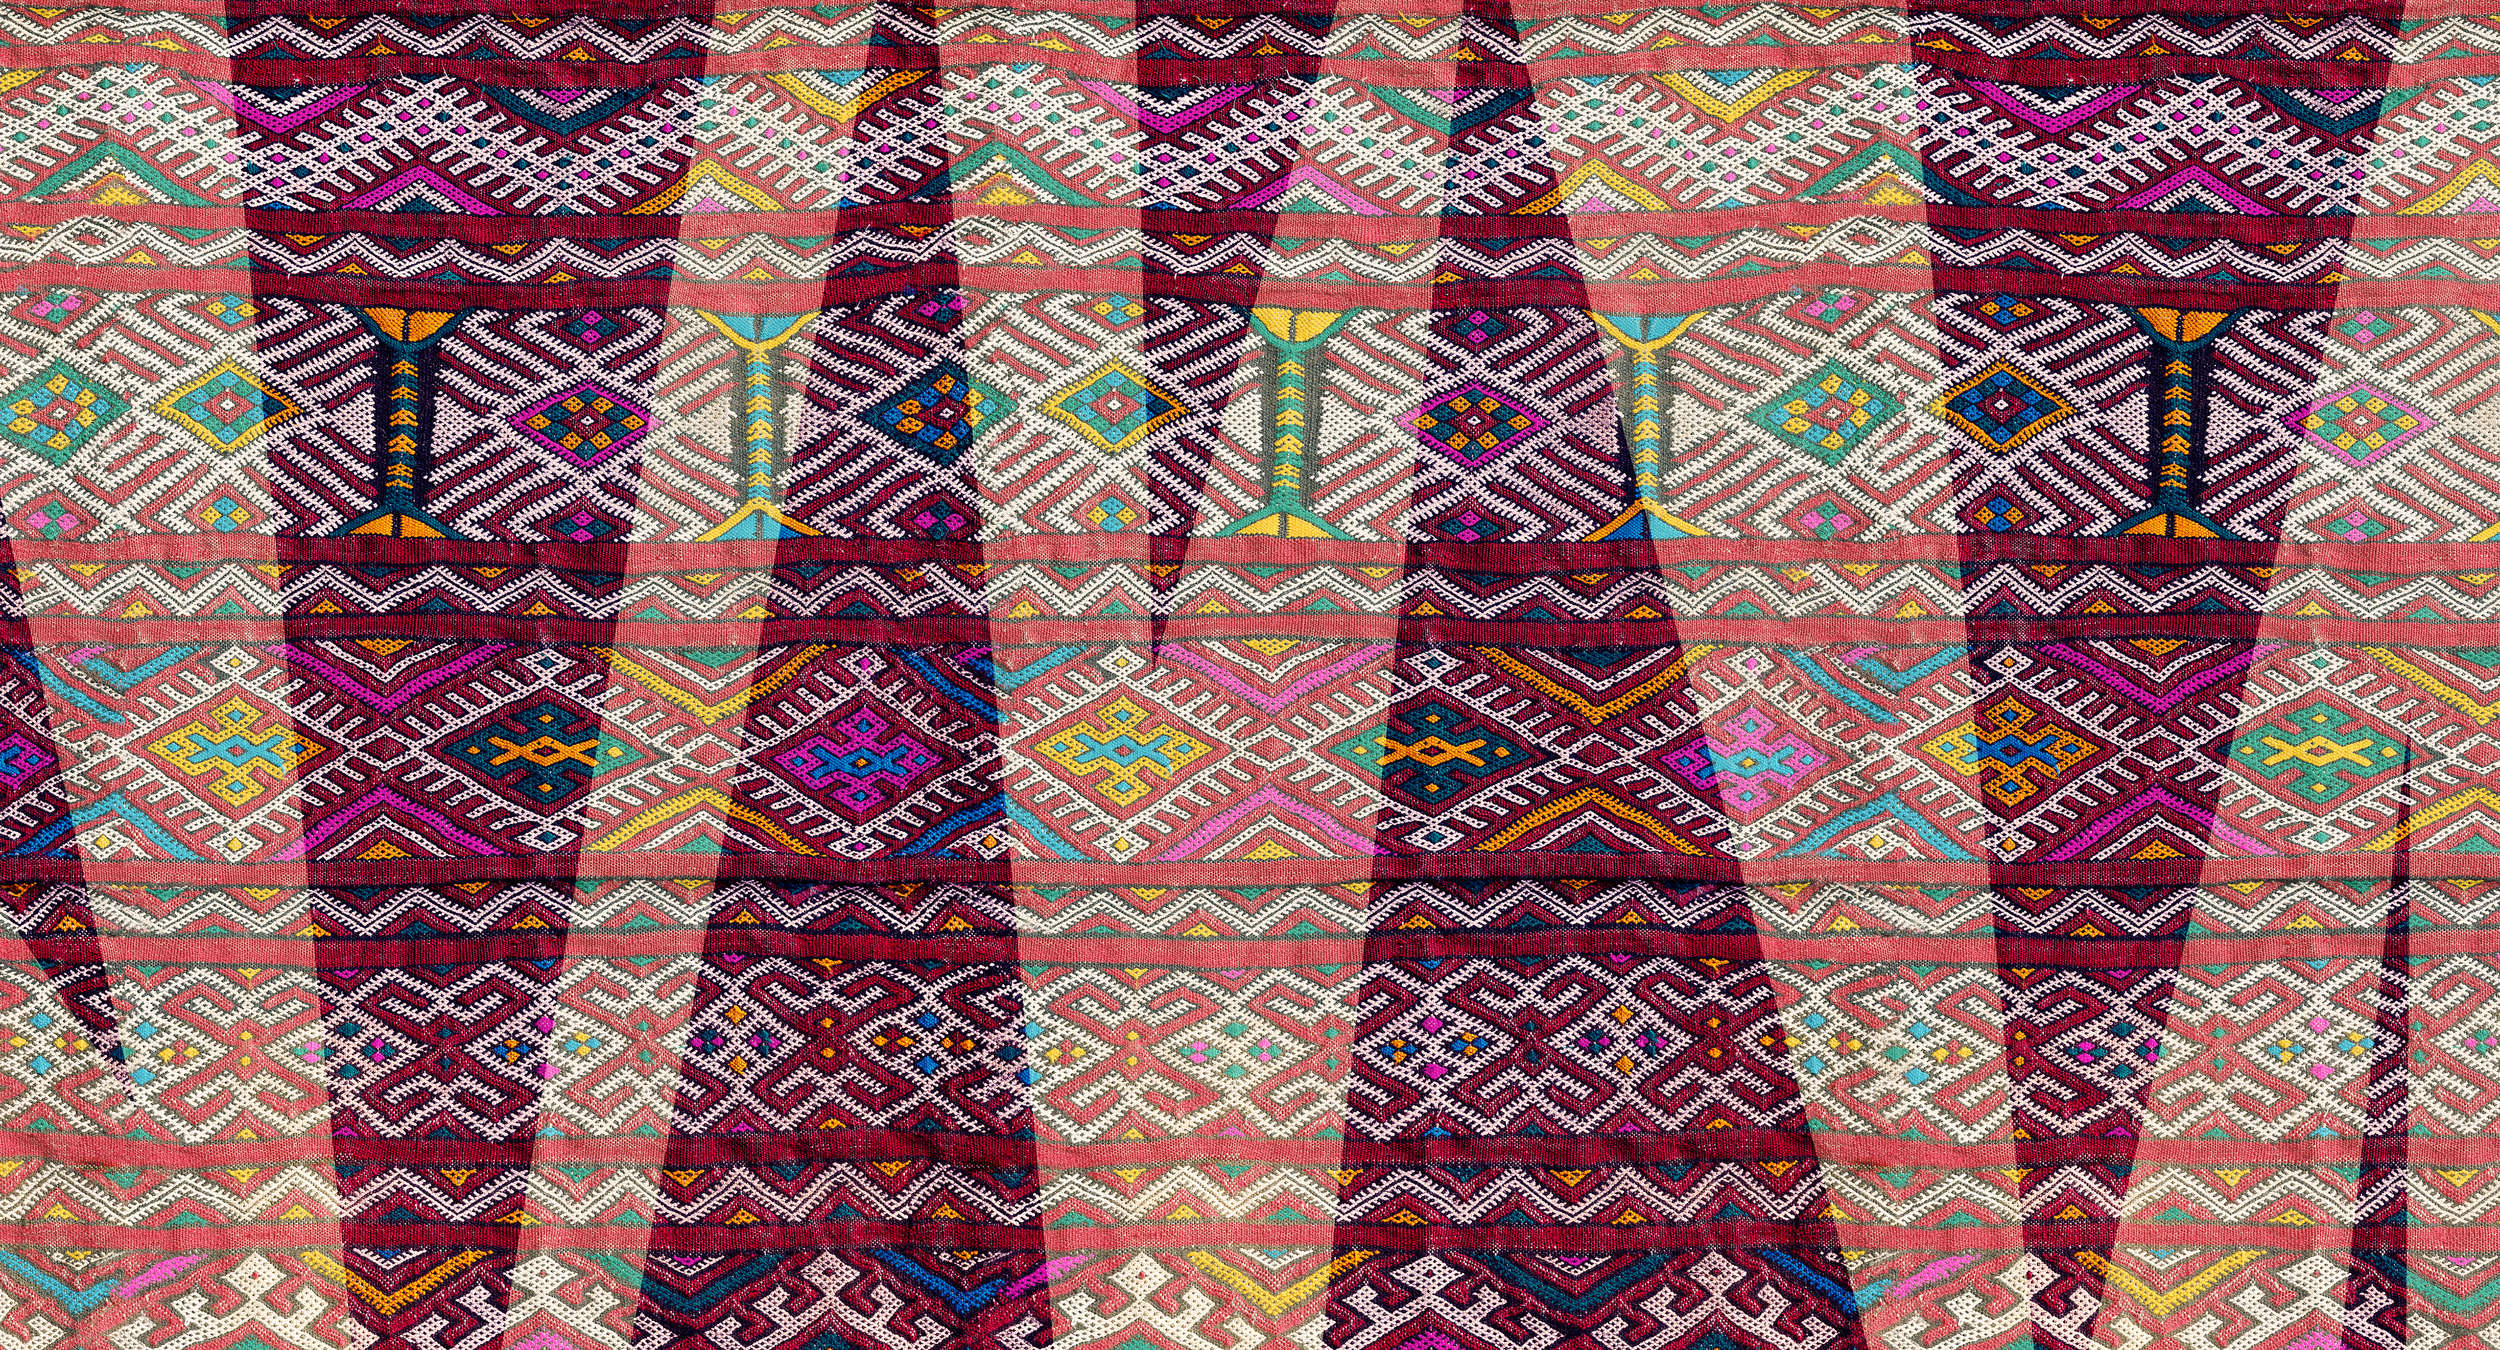             Muurschildering etnische stijl met inheems geweven patroon - paars, groen, oranje
        